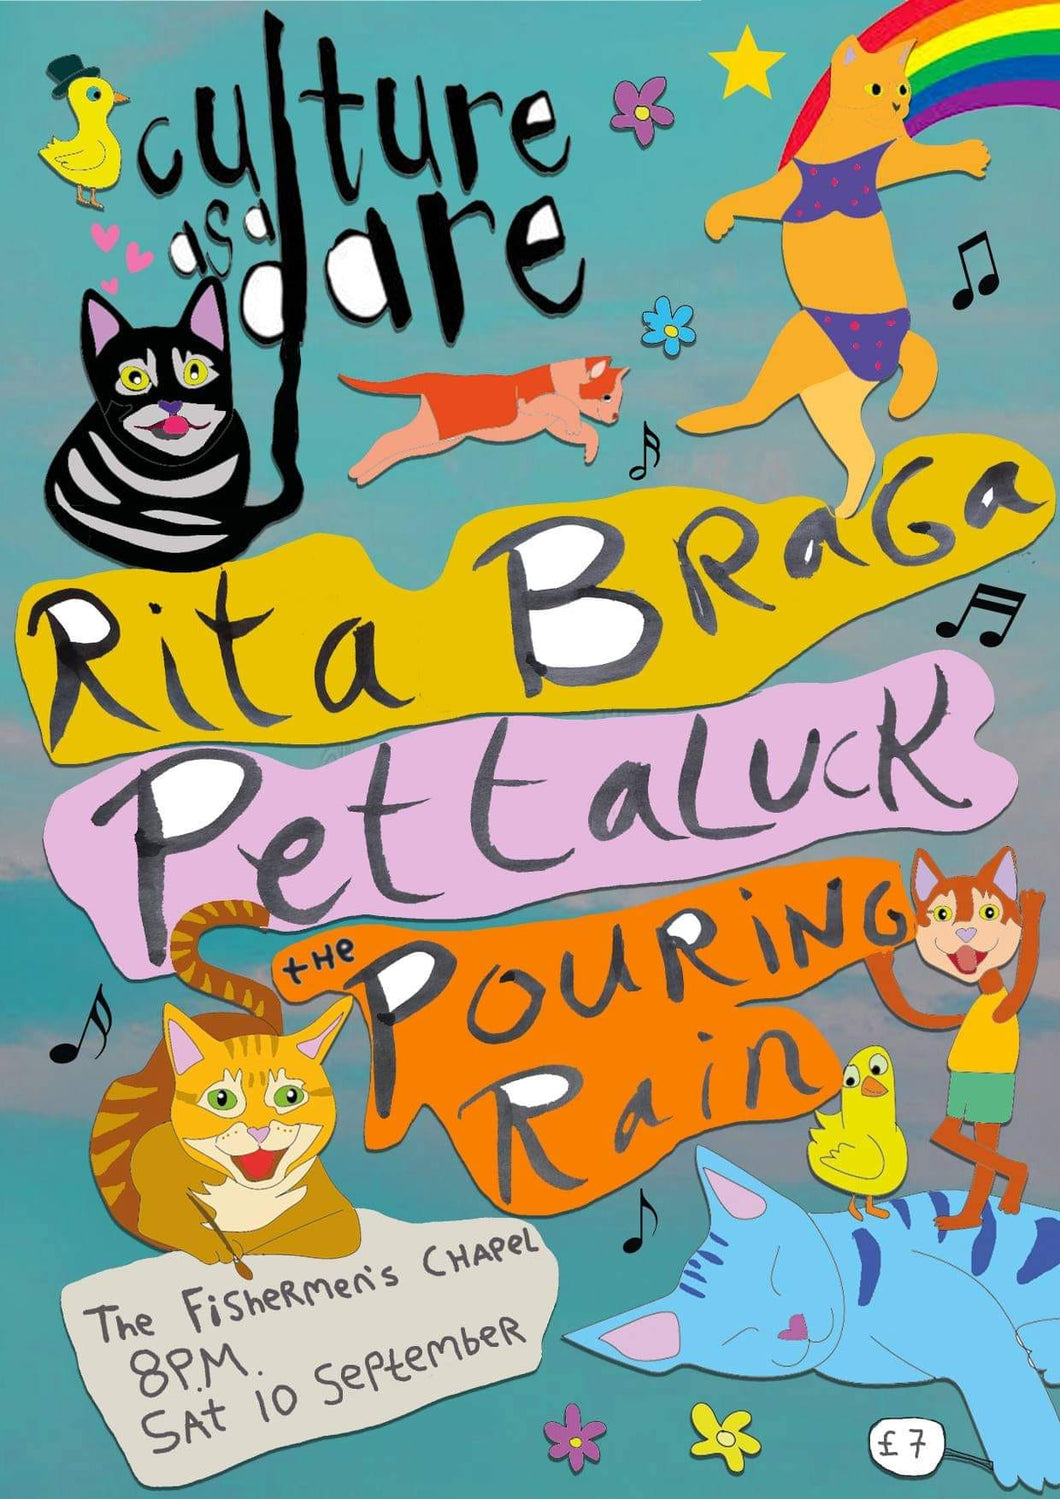 Culture As A Dare - Rita Braga, Pettaluck, The Pouring Rain